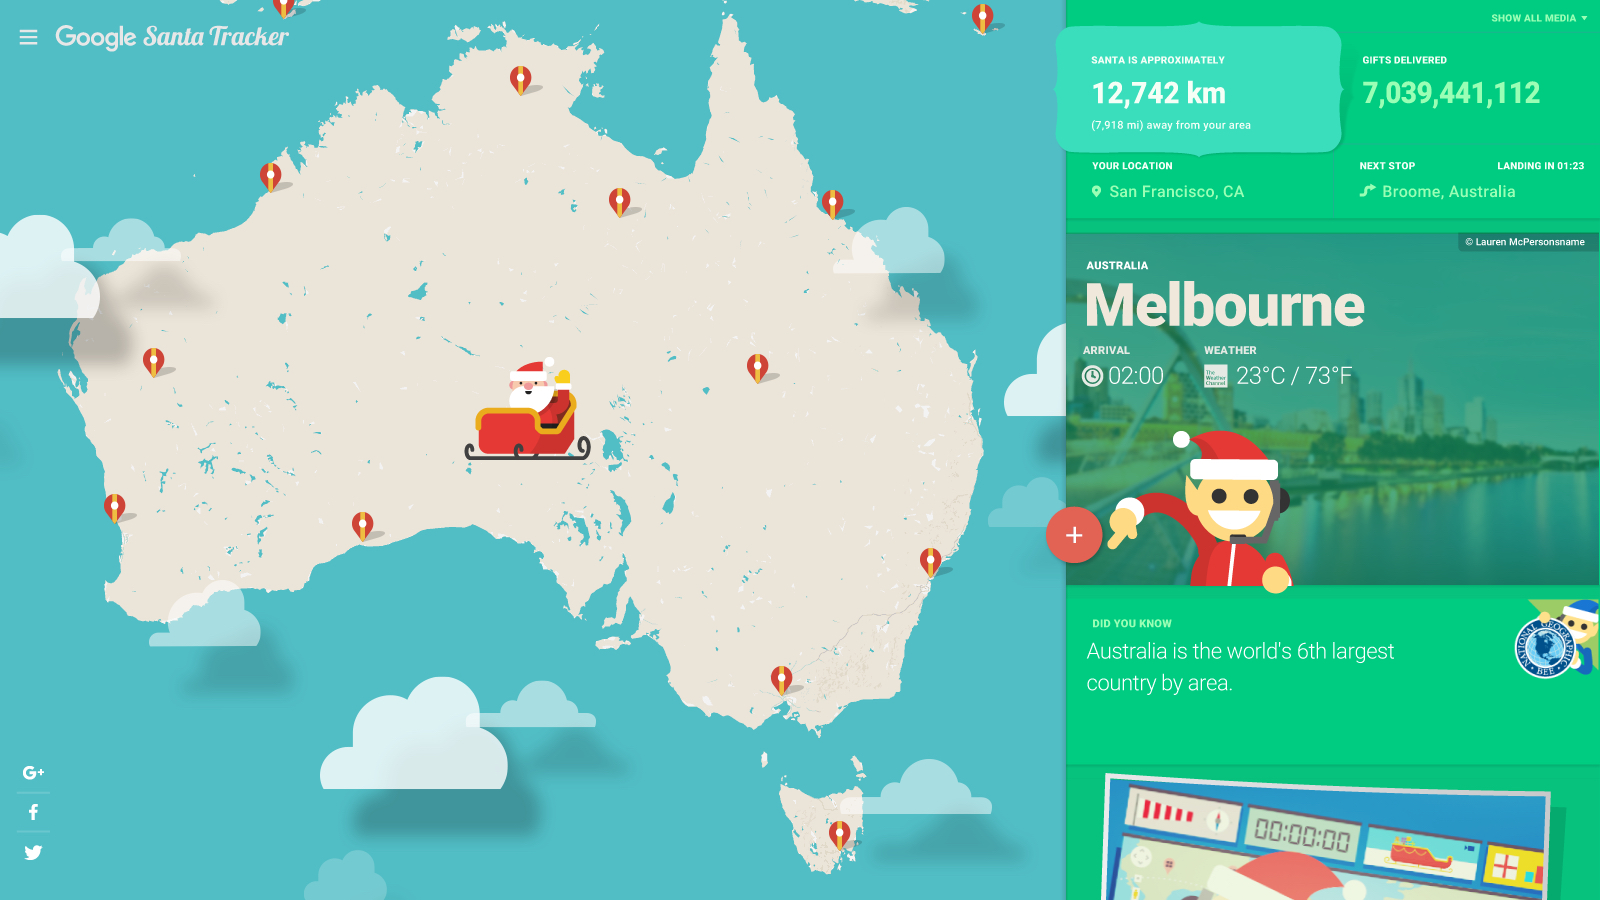 Google releases annual Santa Tracker